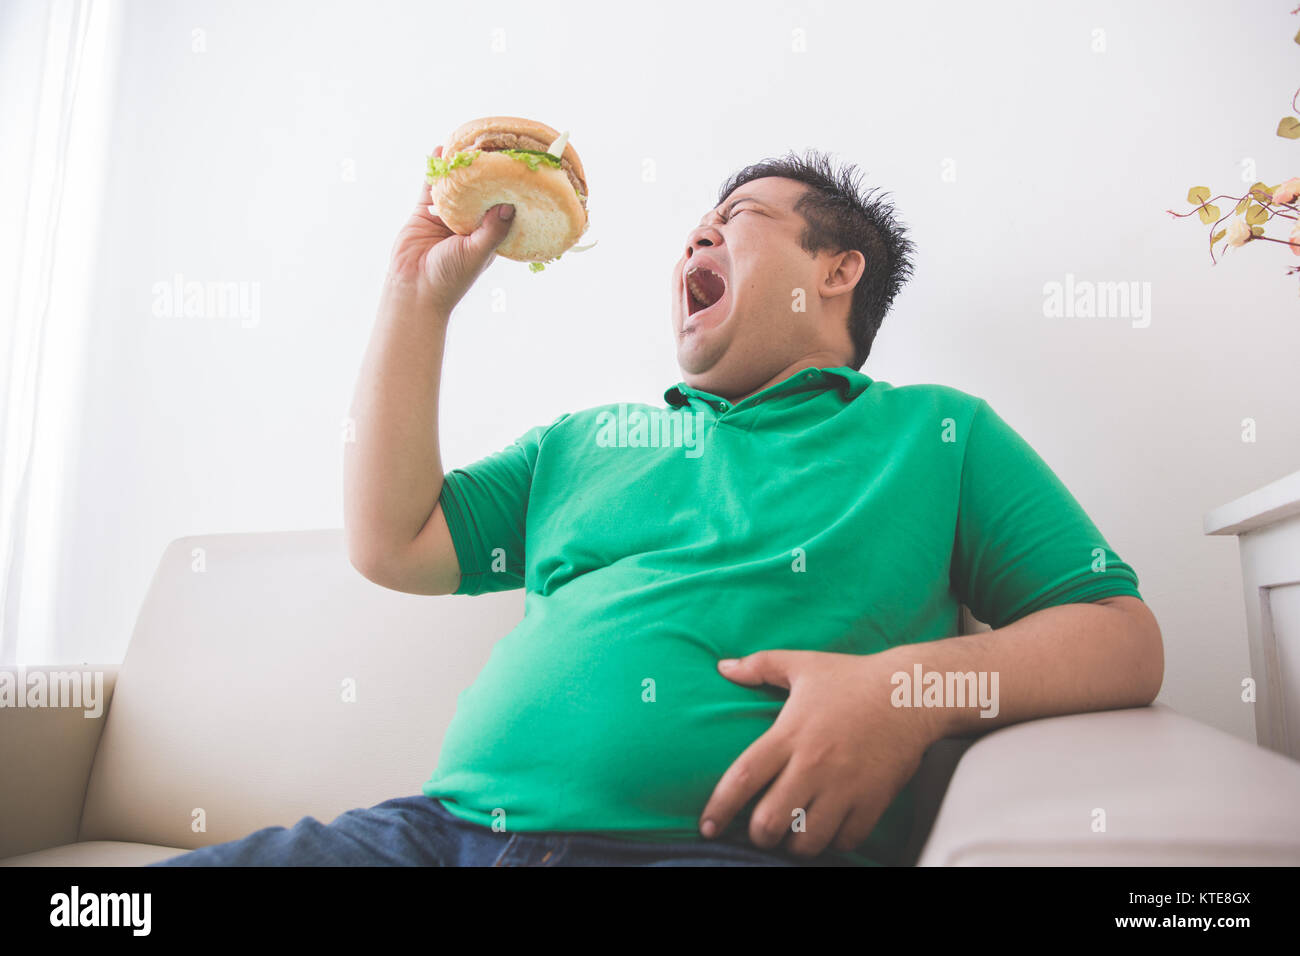 Overweight man eating hamburger at home Stock Photo